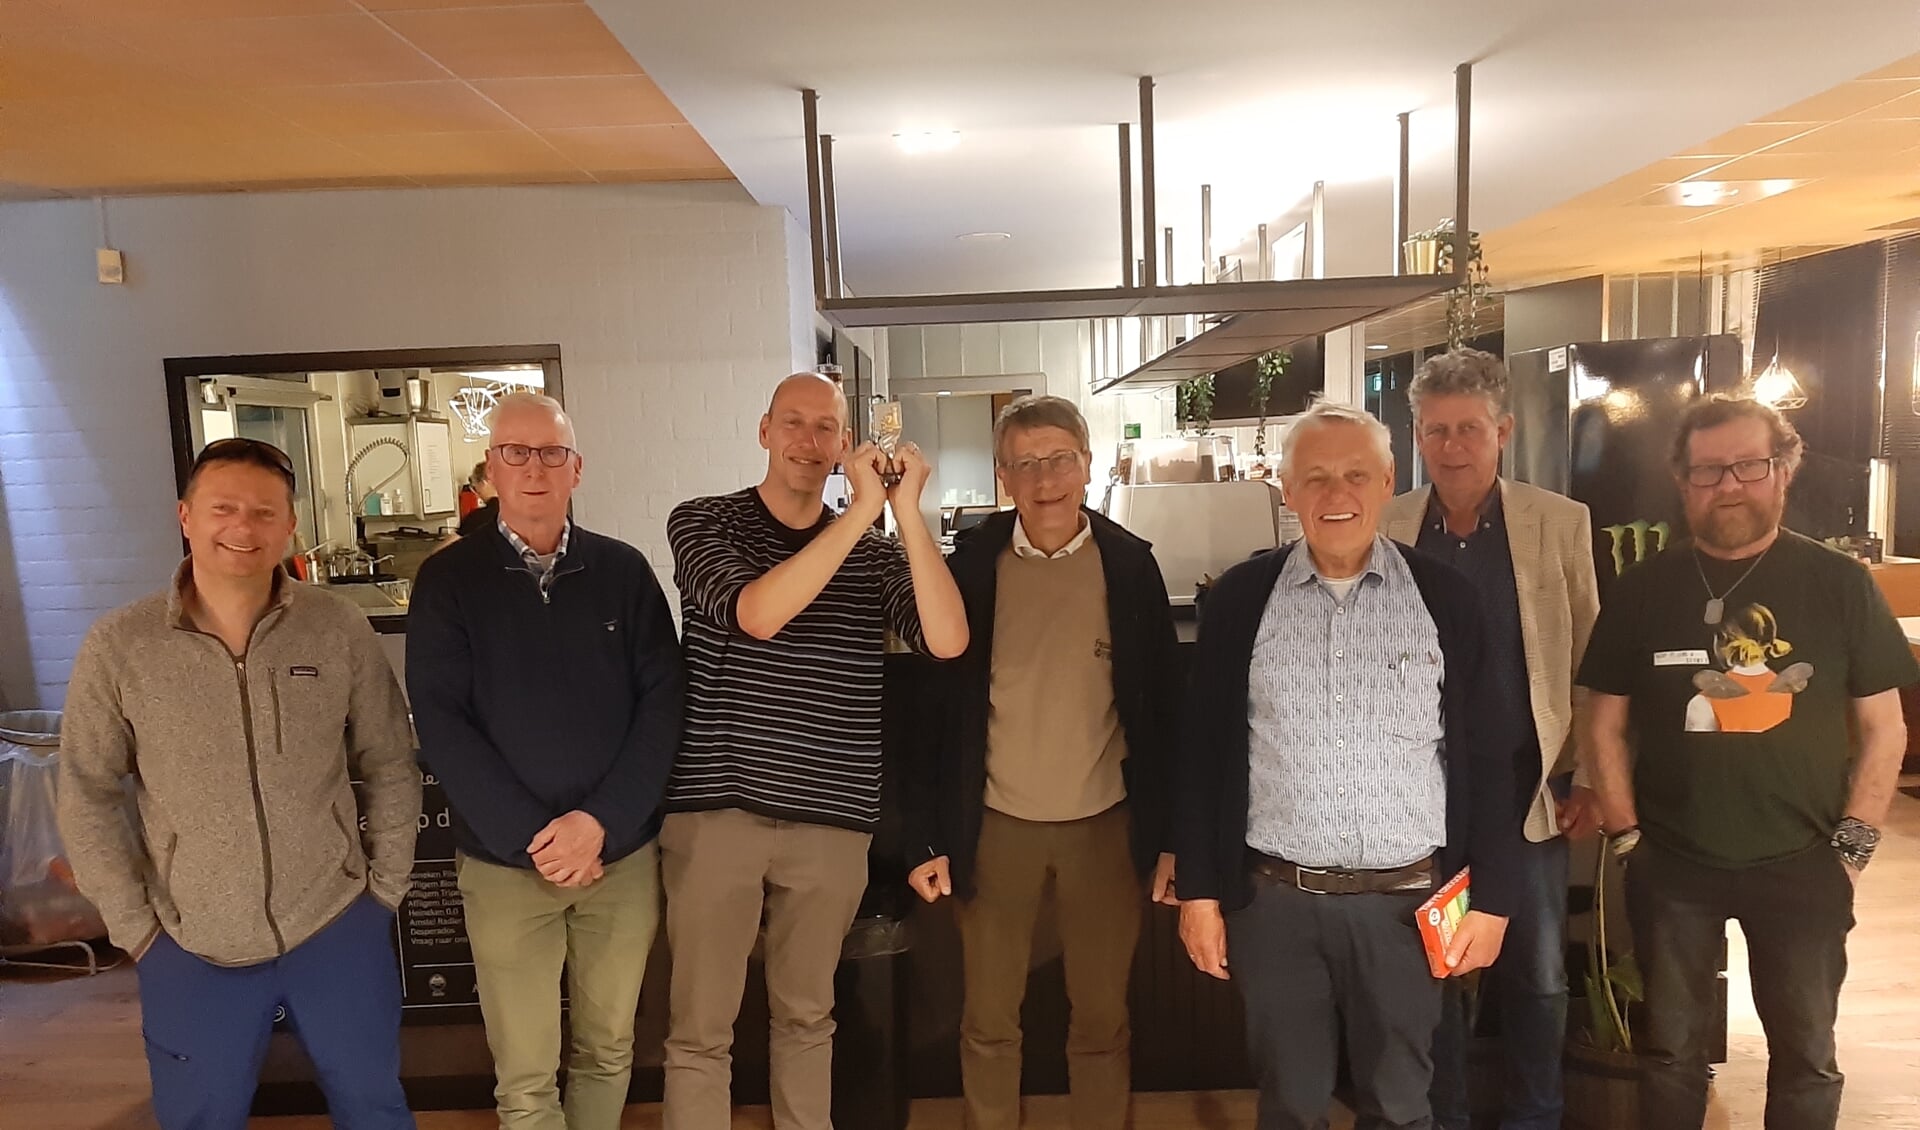 Het winnende schaakteam van De Zeven Pionnen, met vlnr. Harry Logtenberg, Herman Schutte, Frans Voogt, Chris Kruse, Jan van Garderen, Wouter Beerthuis en Rein Schuring.